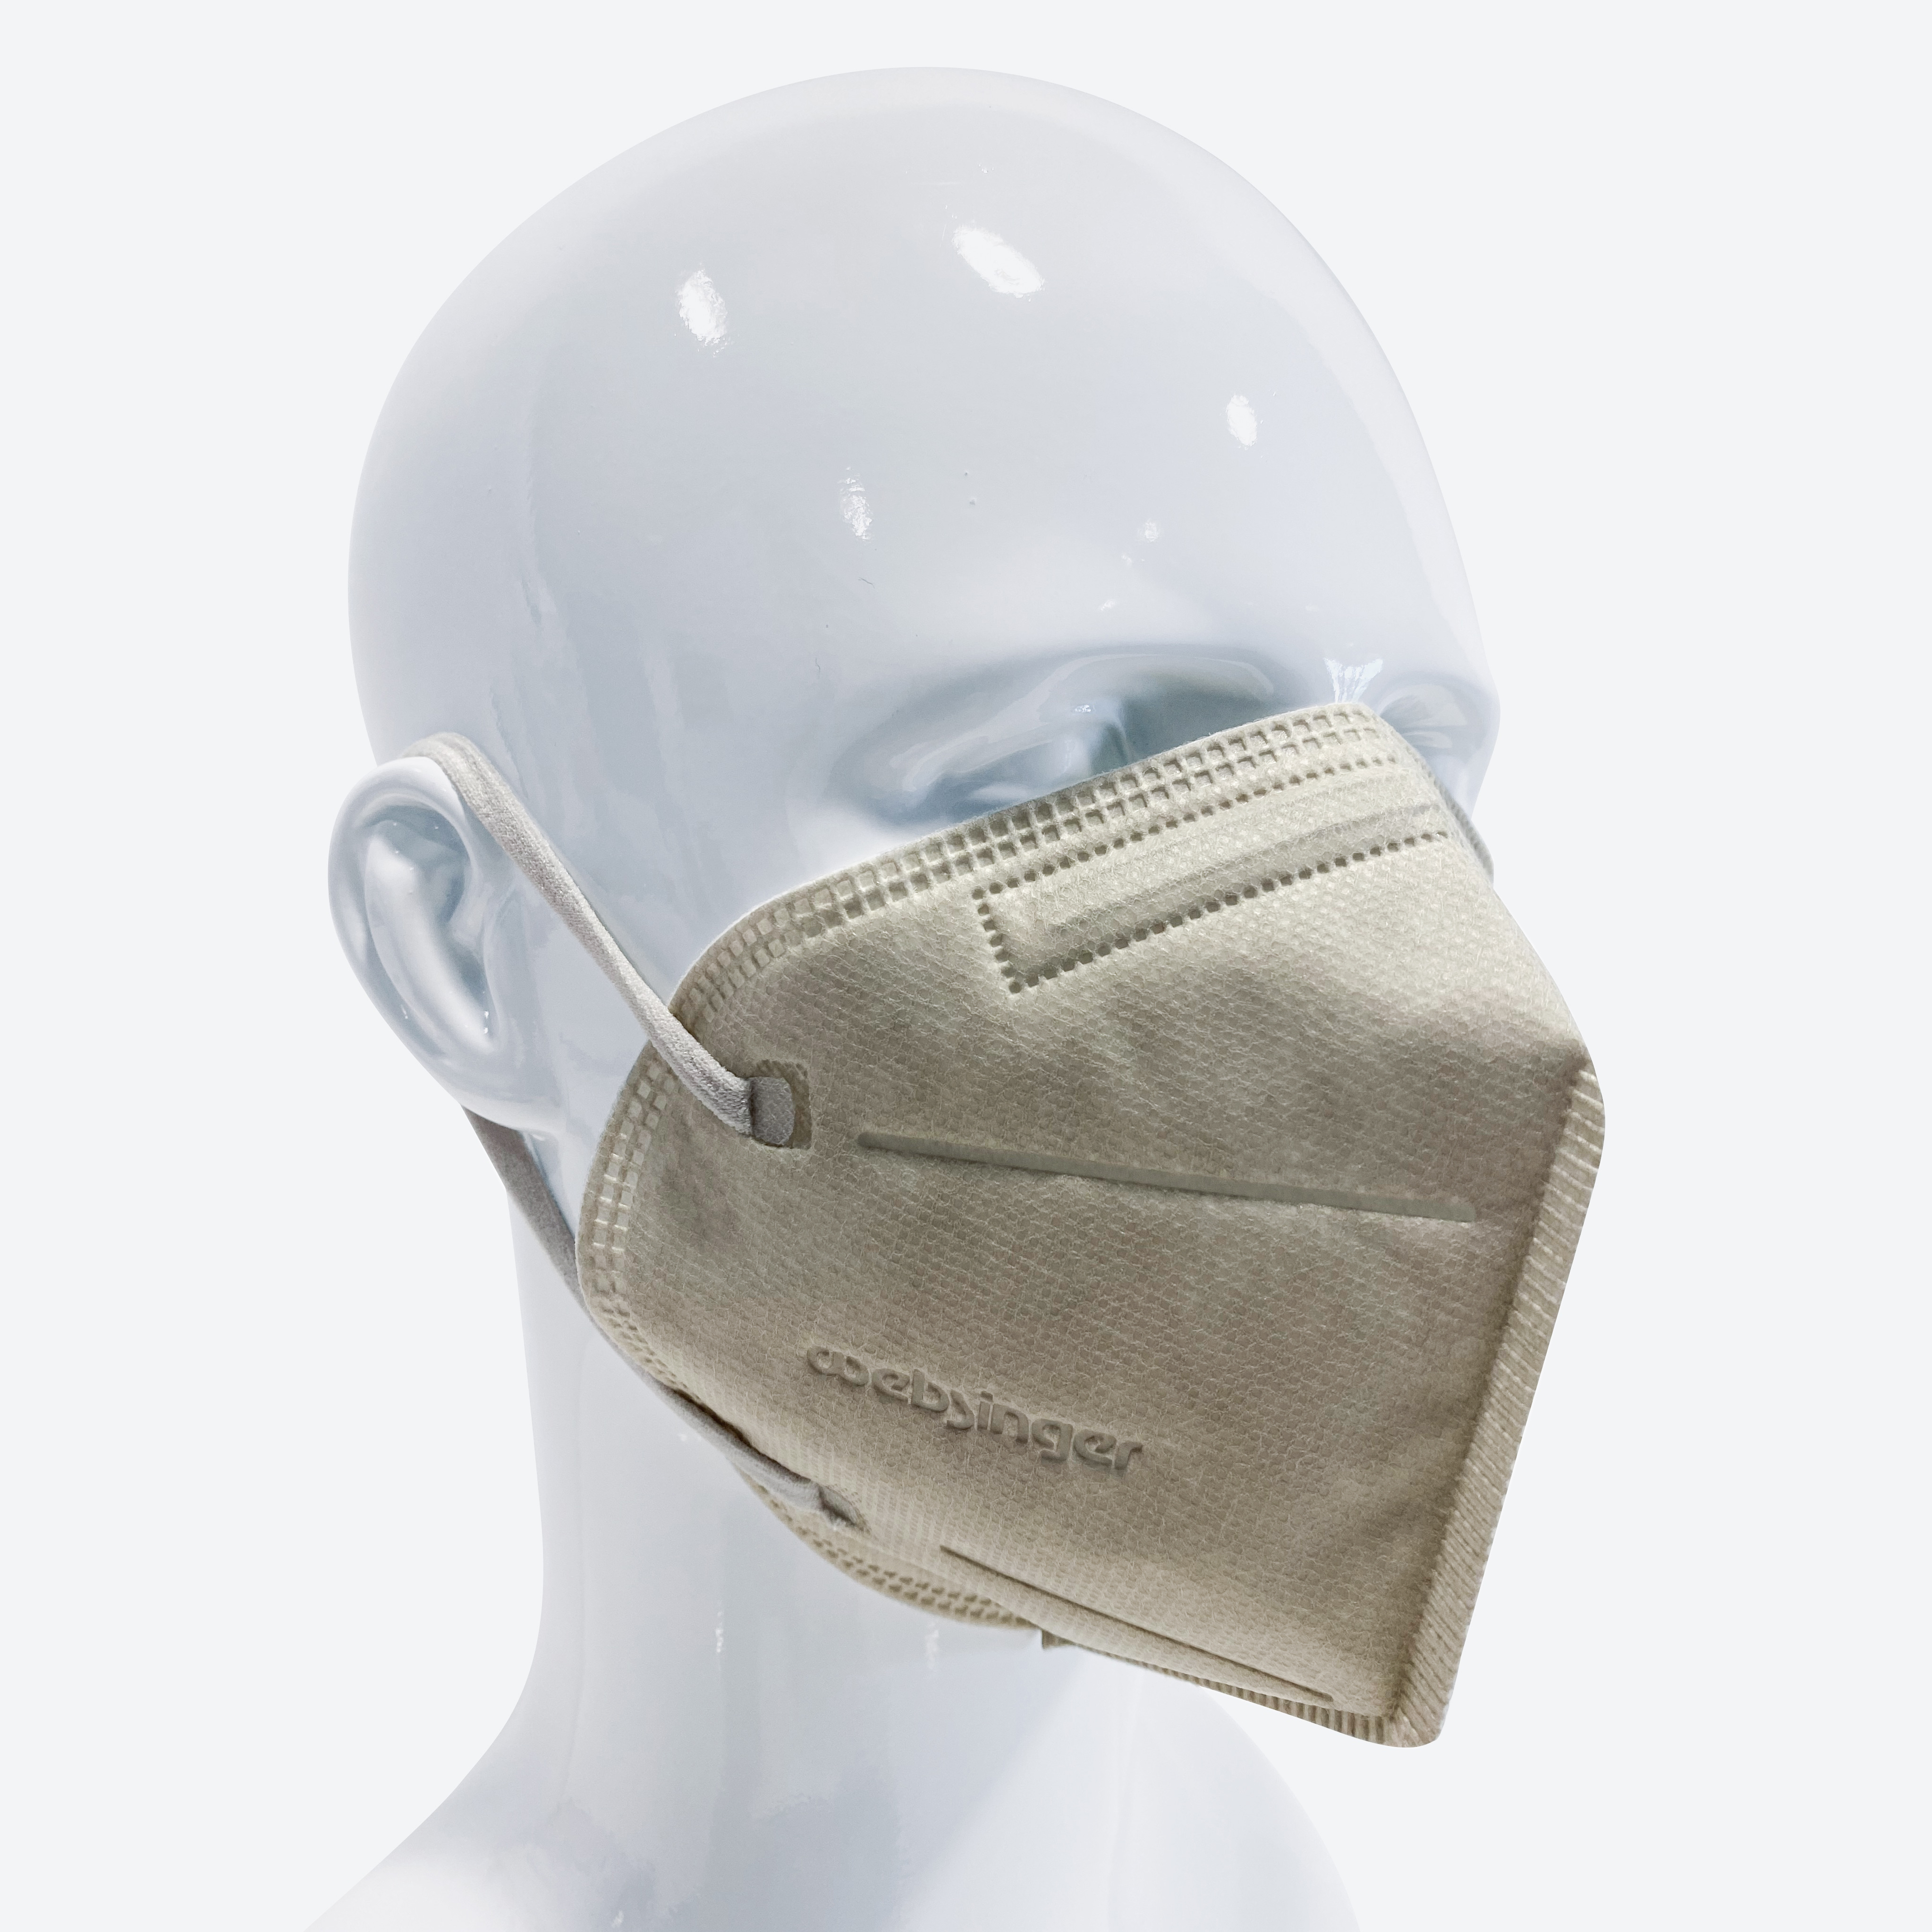 Qualitativ hochwertige FFP2-Schutzmasken - VANILLA EDITION 